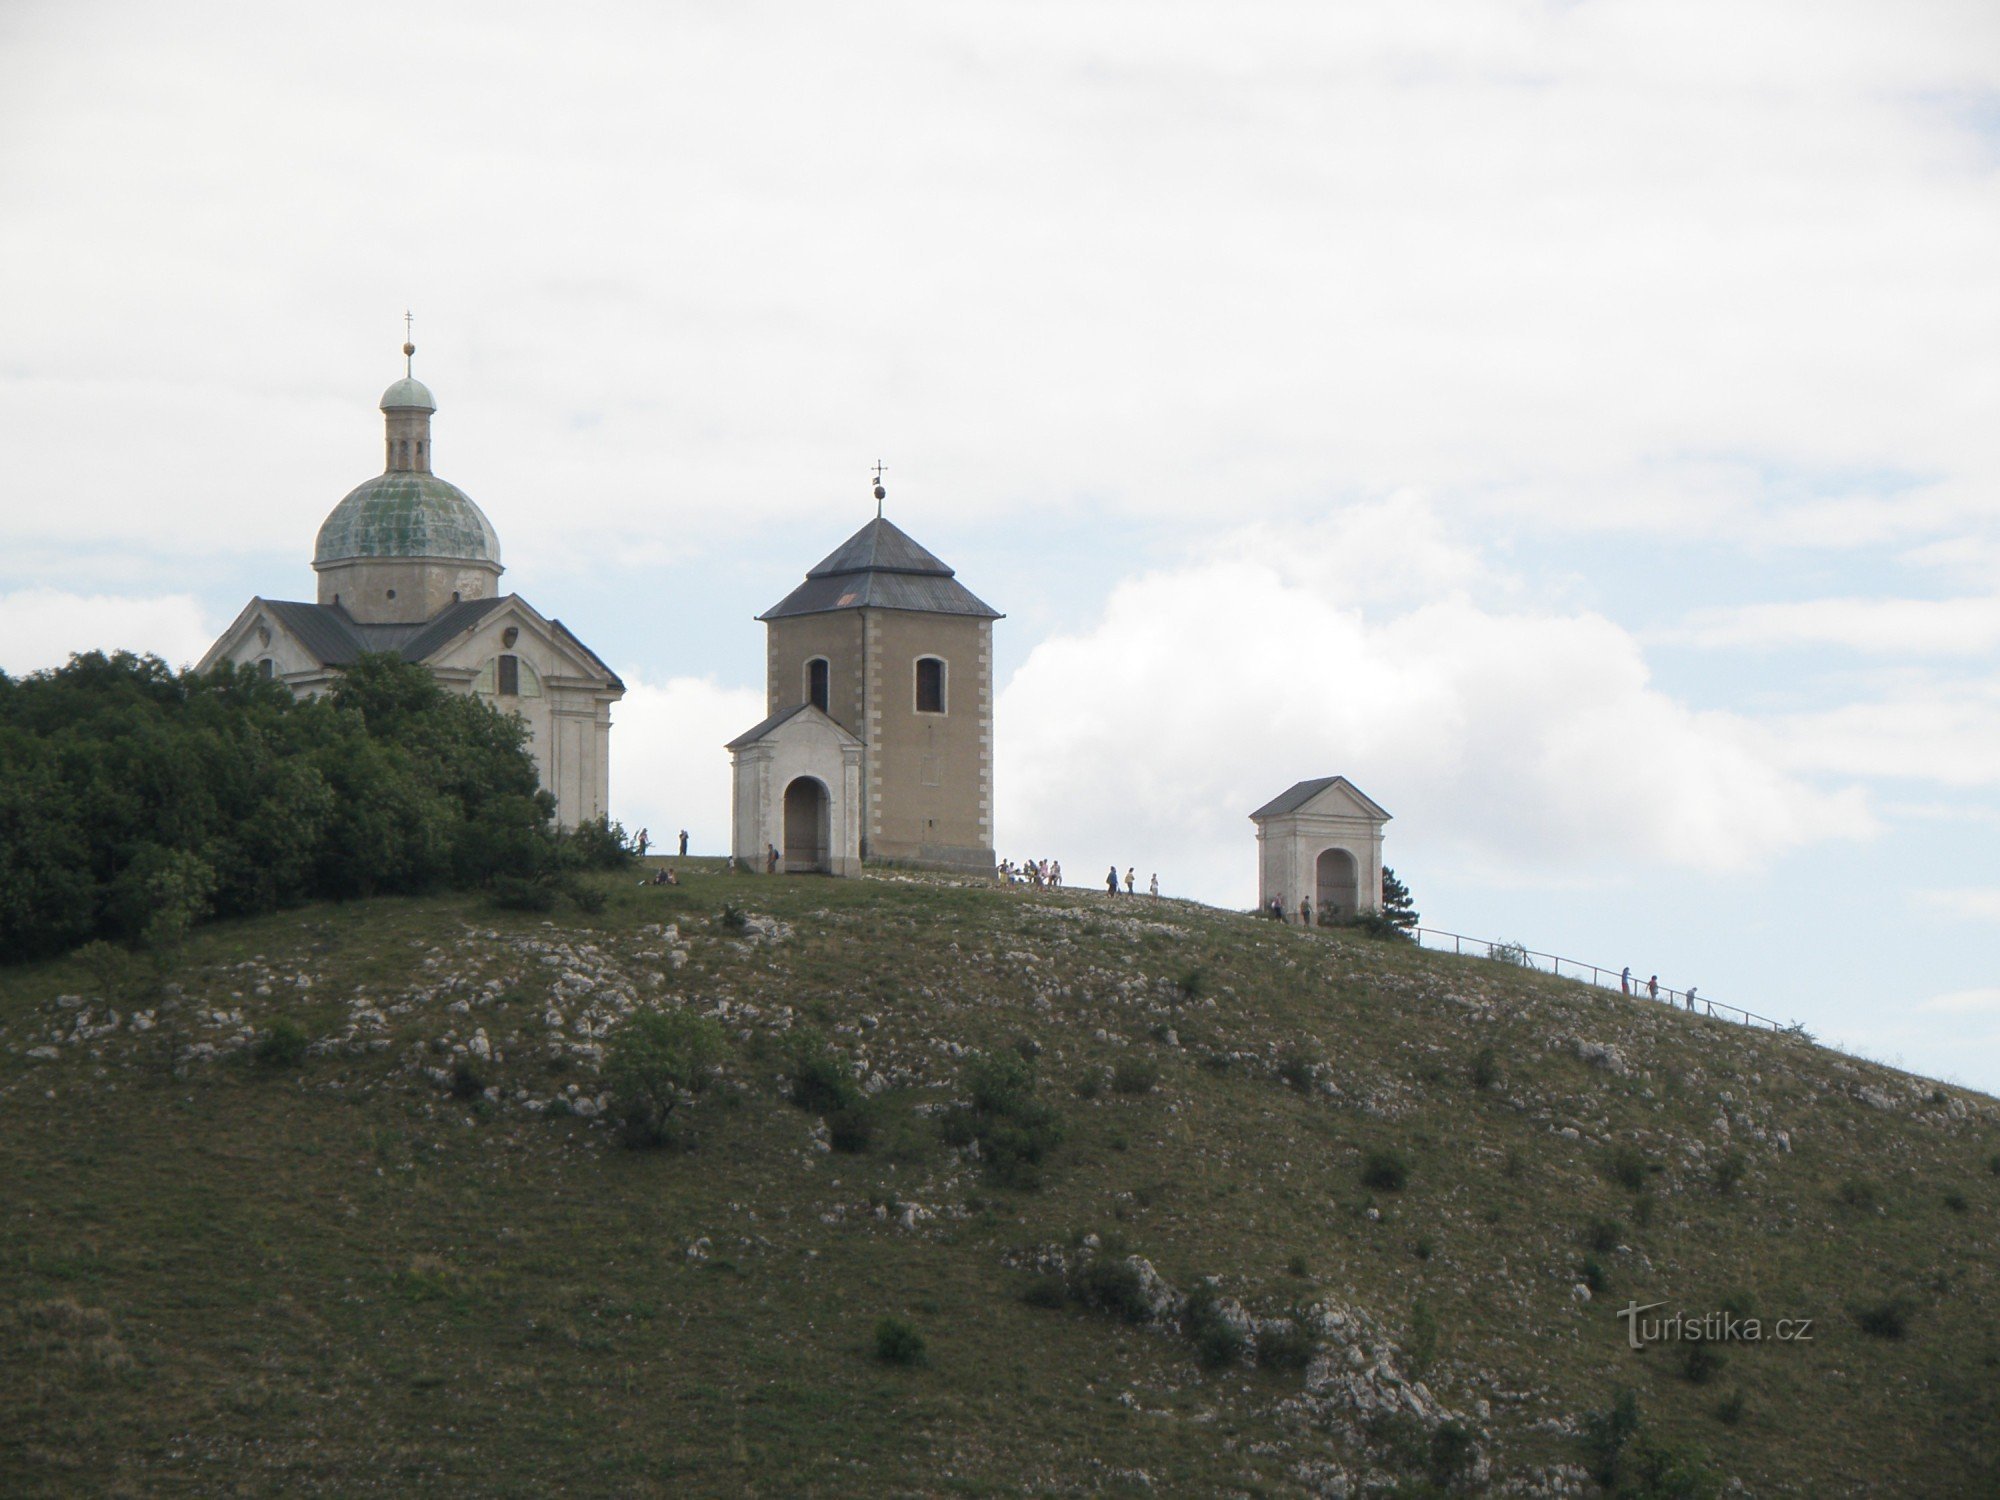 view of Svatý kopecek